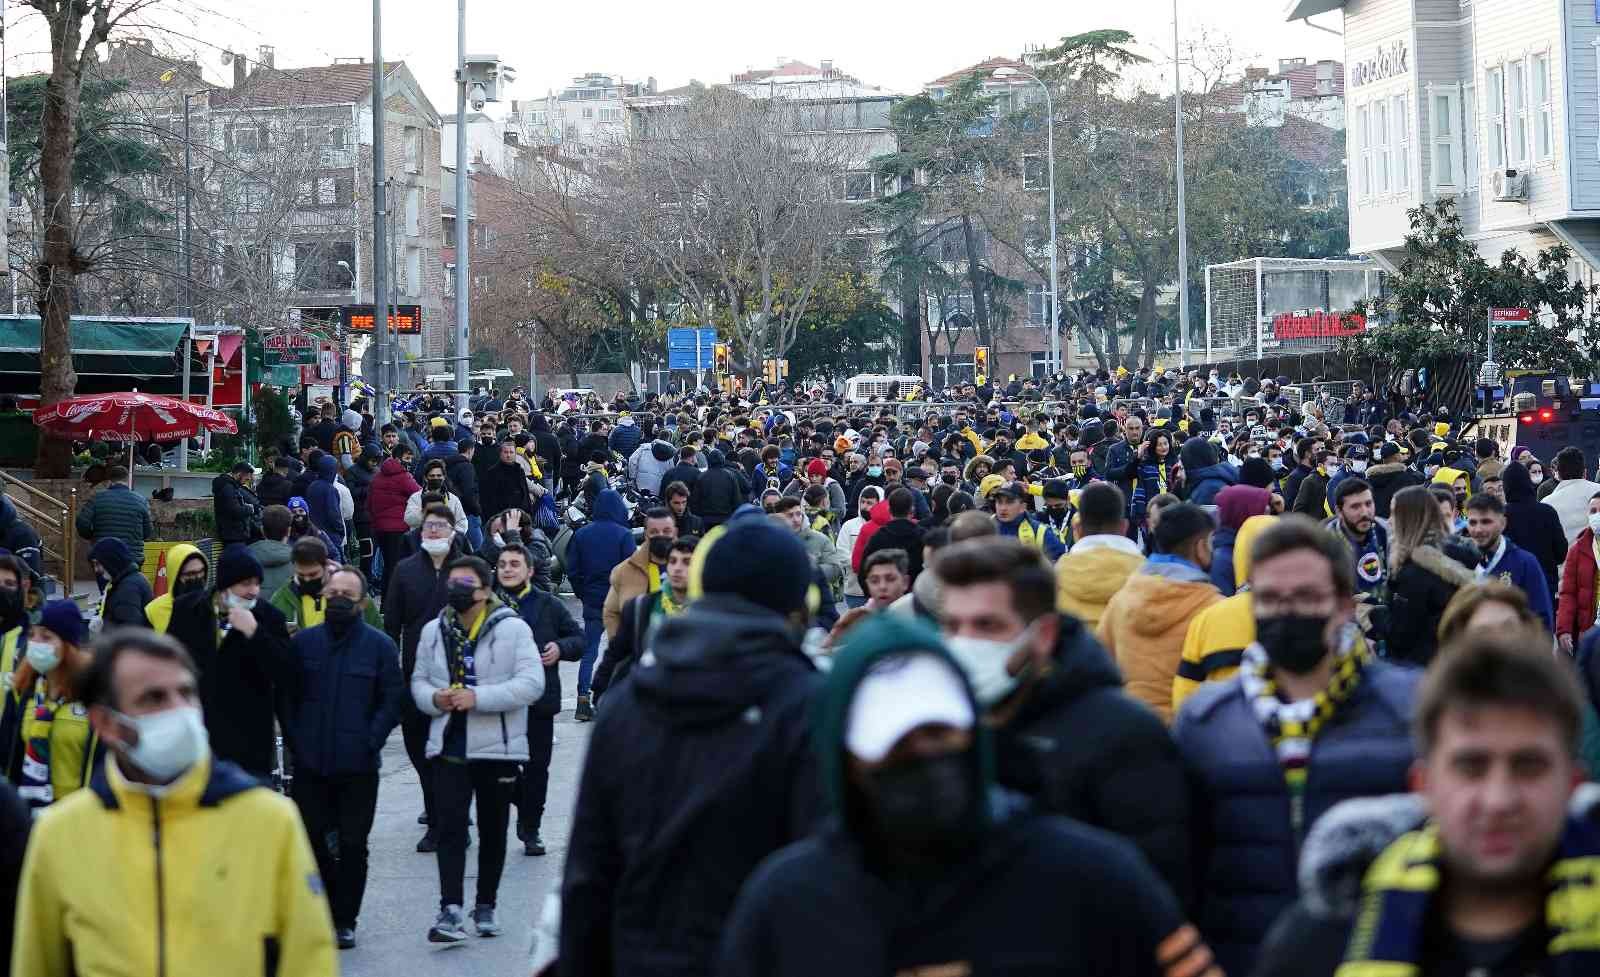 Spor Toto Süper Lig: Fenerbahçe: 1 - Beşiktaş: 0 (Maç devam ediyor) #istanbul